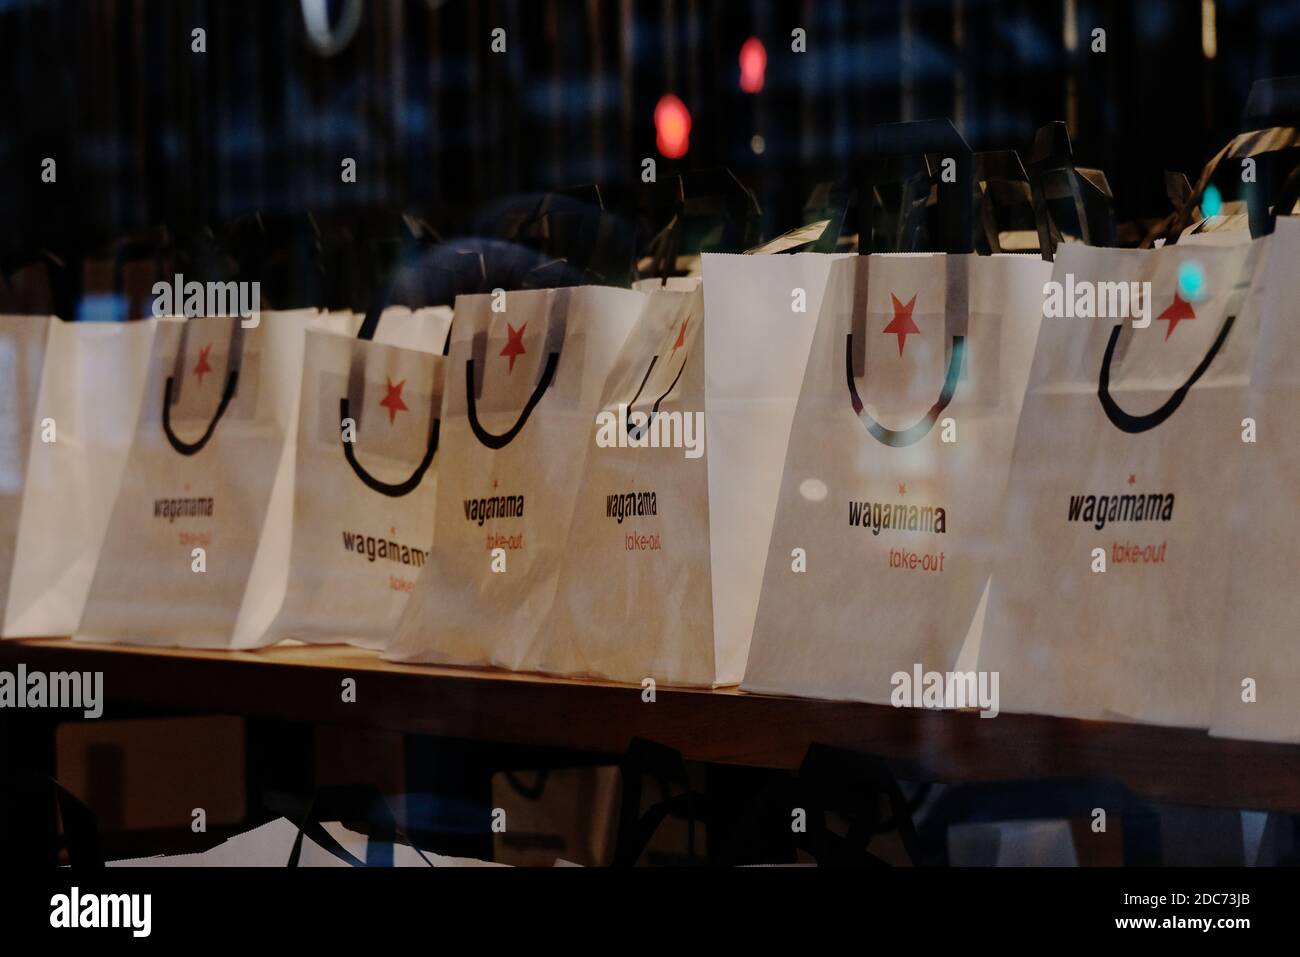 Les sacs en papier « à emporter » du restaurant Wagamama sont affichés dans la fenêtre, tandis que le verrouillage de l'Angleterre permet de les emporter uniquement jusqu'à ce que les restrictions soient levées. Banque D'Images